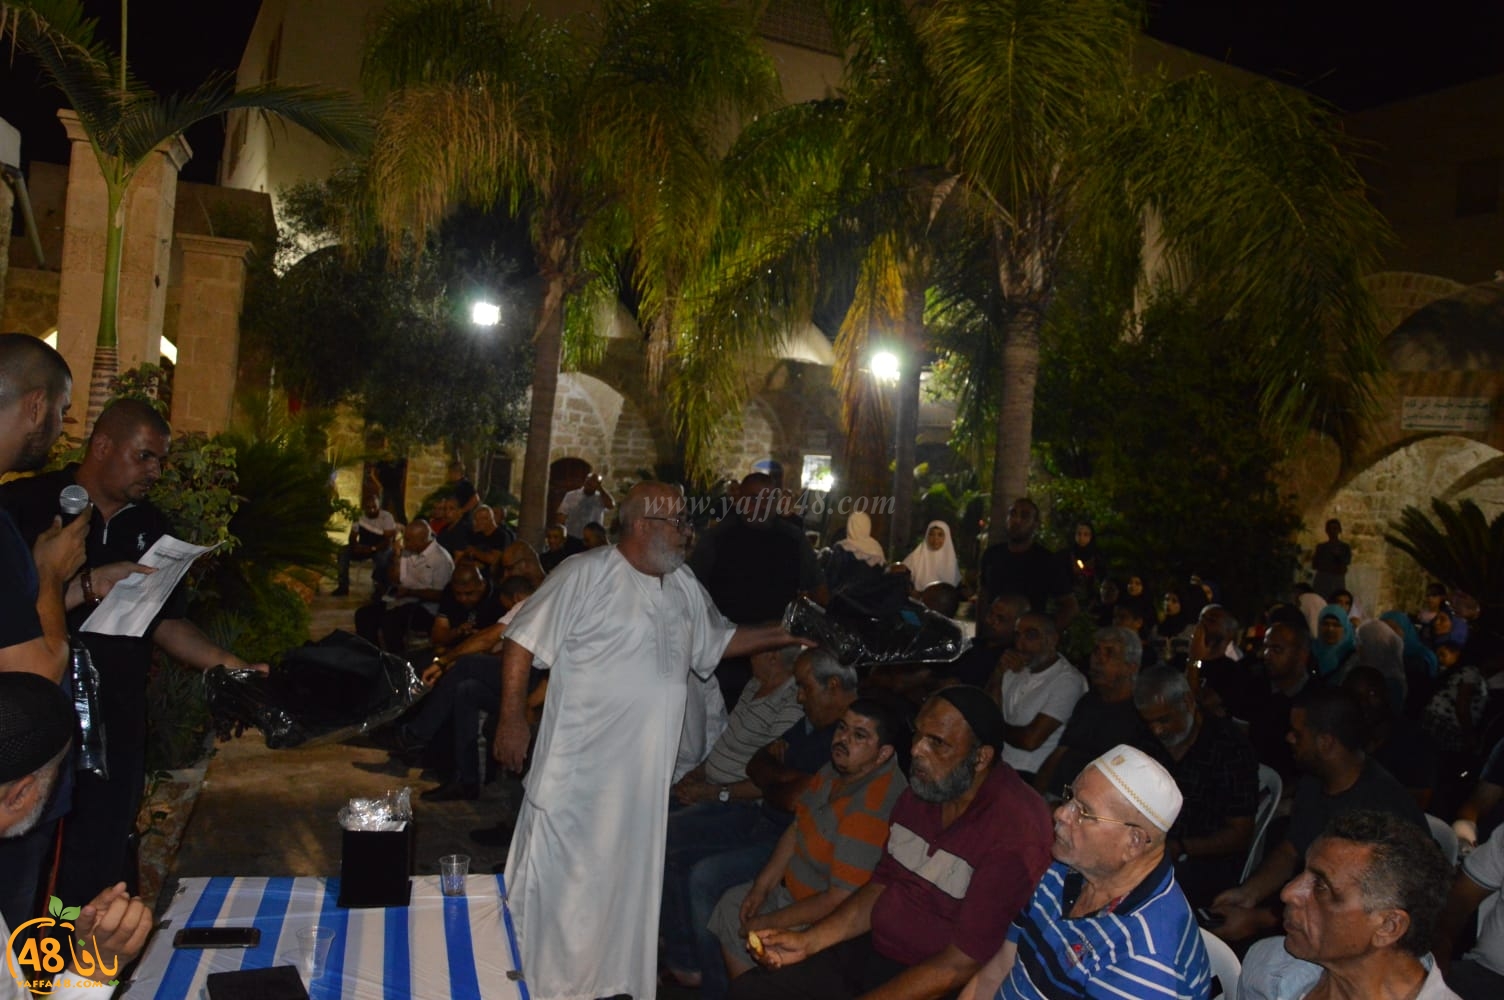 بالصور: لجنة تيسير الحج والعمرة بيافا تُنظم احتفالاً لتوديع حجاج بيت الله الحرام